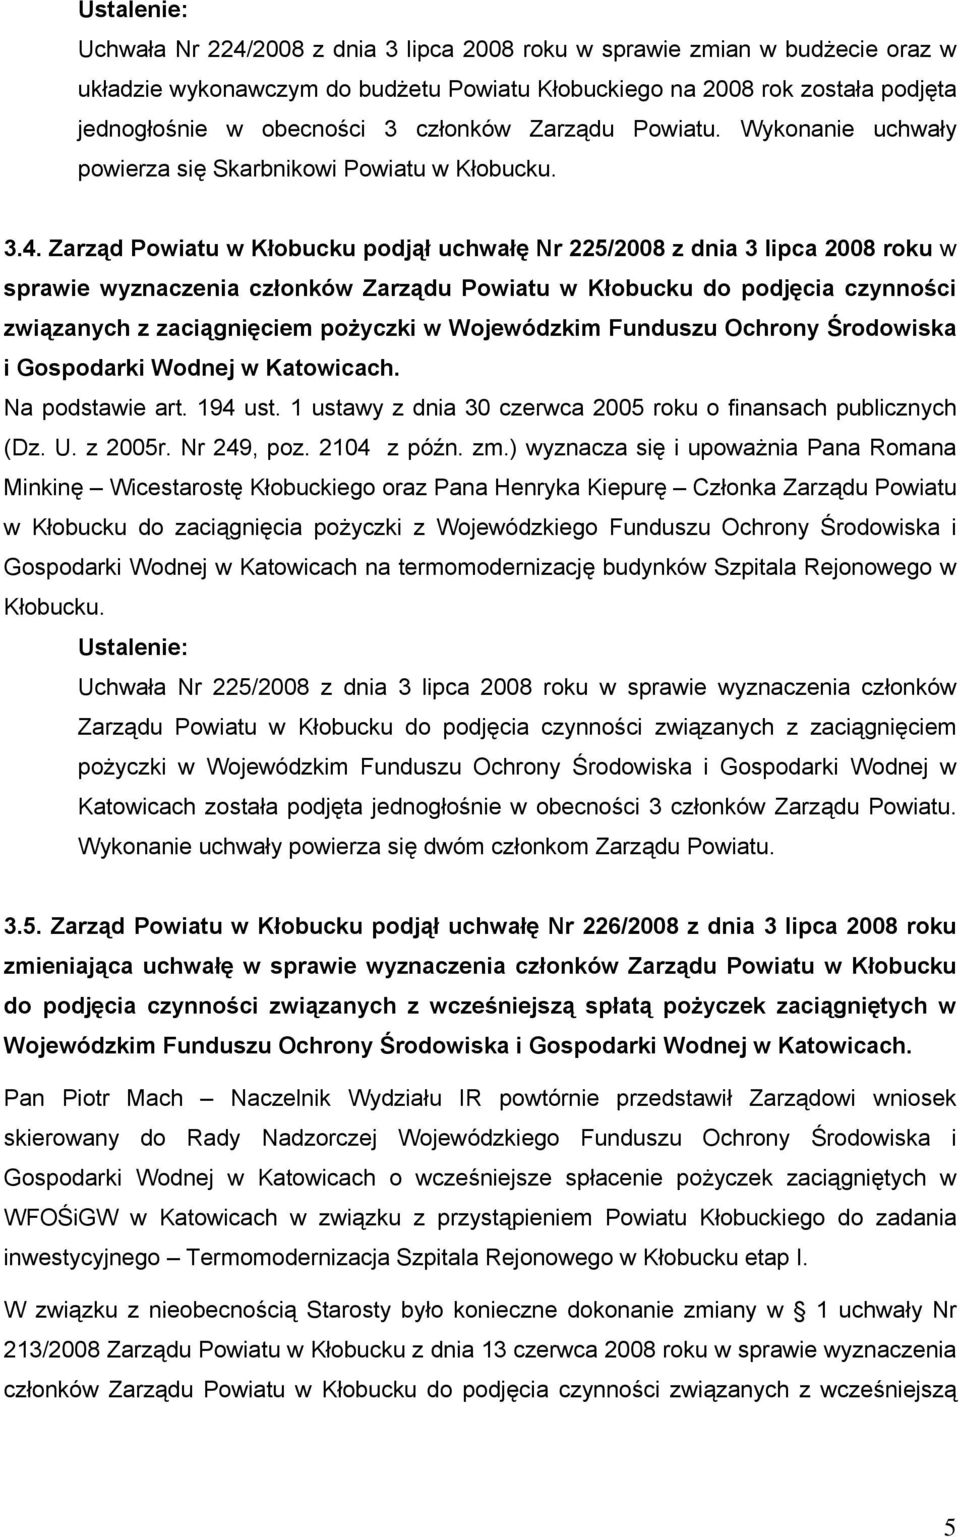 Zarząd Powiatu w Kłobucku podjął uchwałę Nr 225/2008 z dnia 3 lipca 2008 roku w sprawie wyznaczenia członków Zarządu Powiatu w Kłobucku do podjęcia czynności związanych z zaciągnięciem pożyczki w